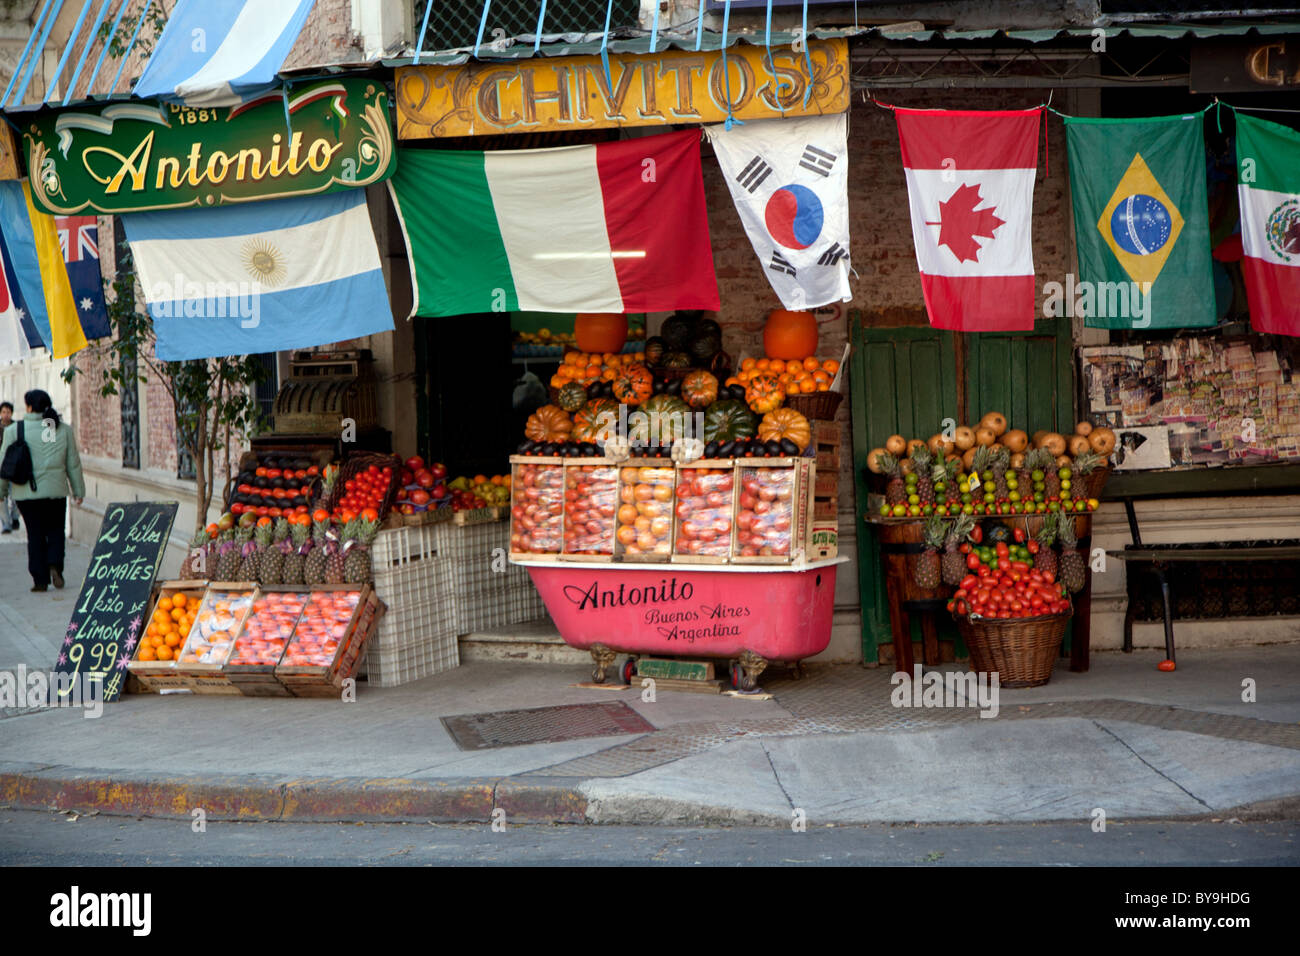 Die Straßen von Palermo Viejo oder Palermo Soho, einem trendigen Viertel von Buenos Aires, Argentinien. Stockfoto